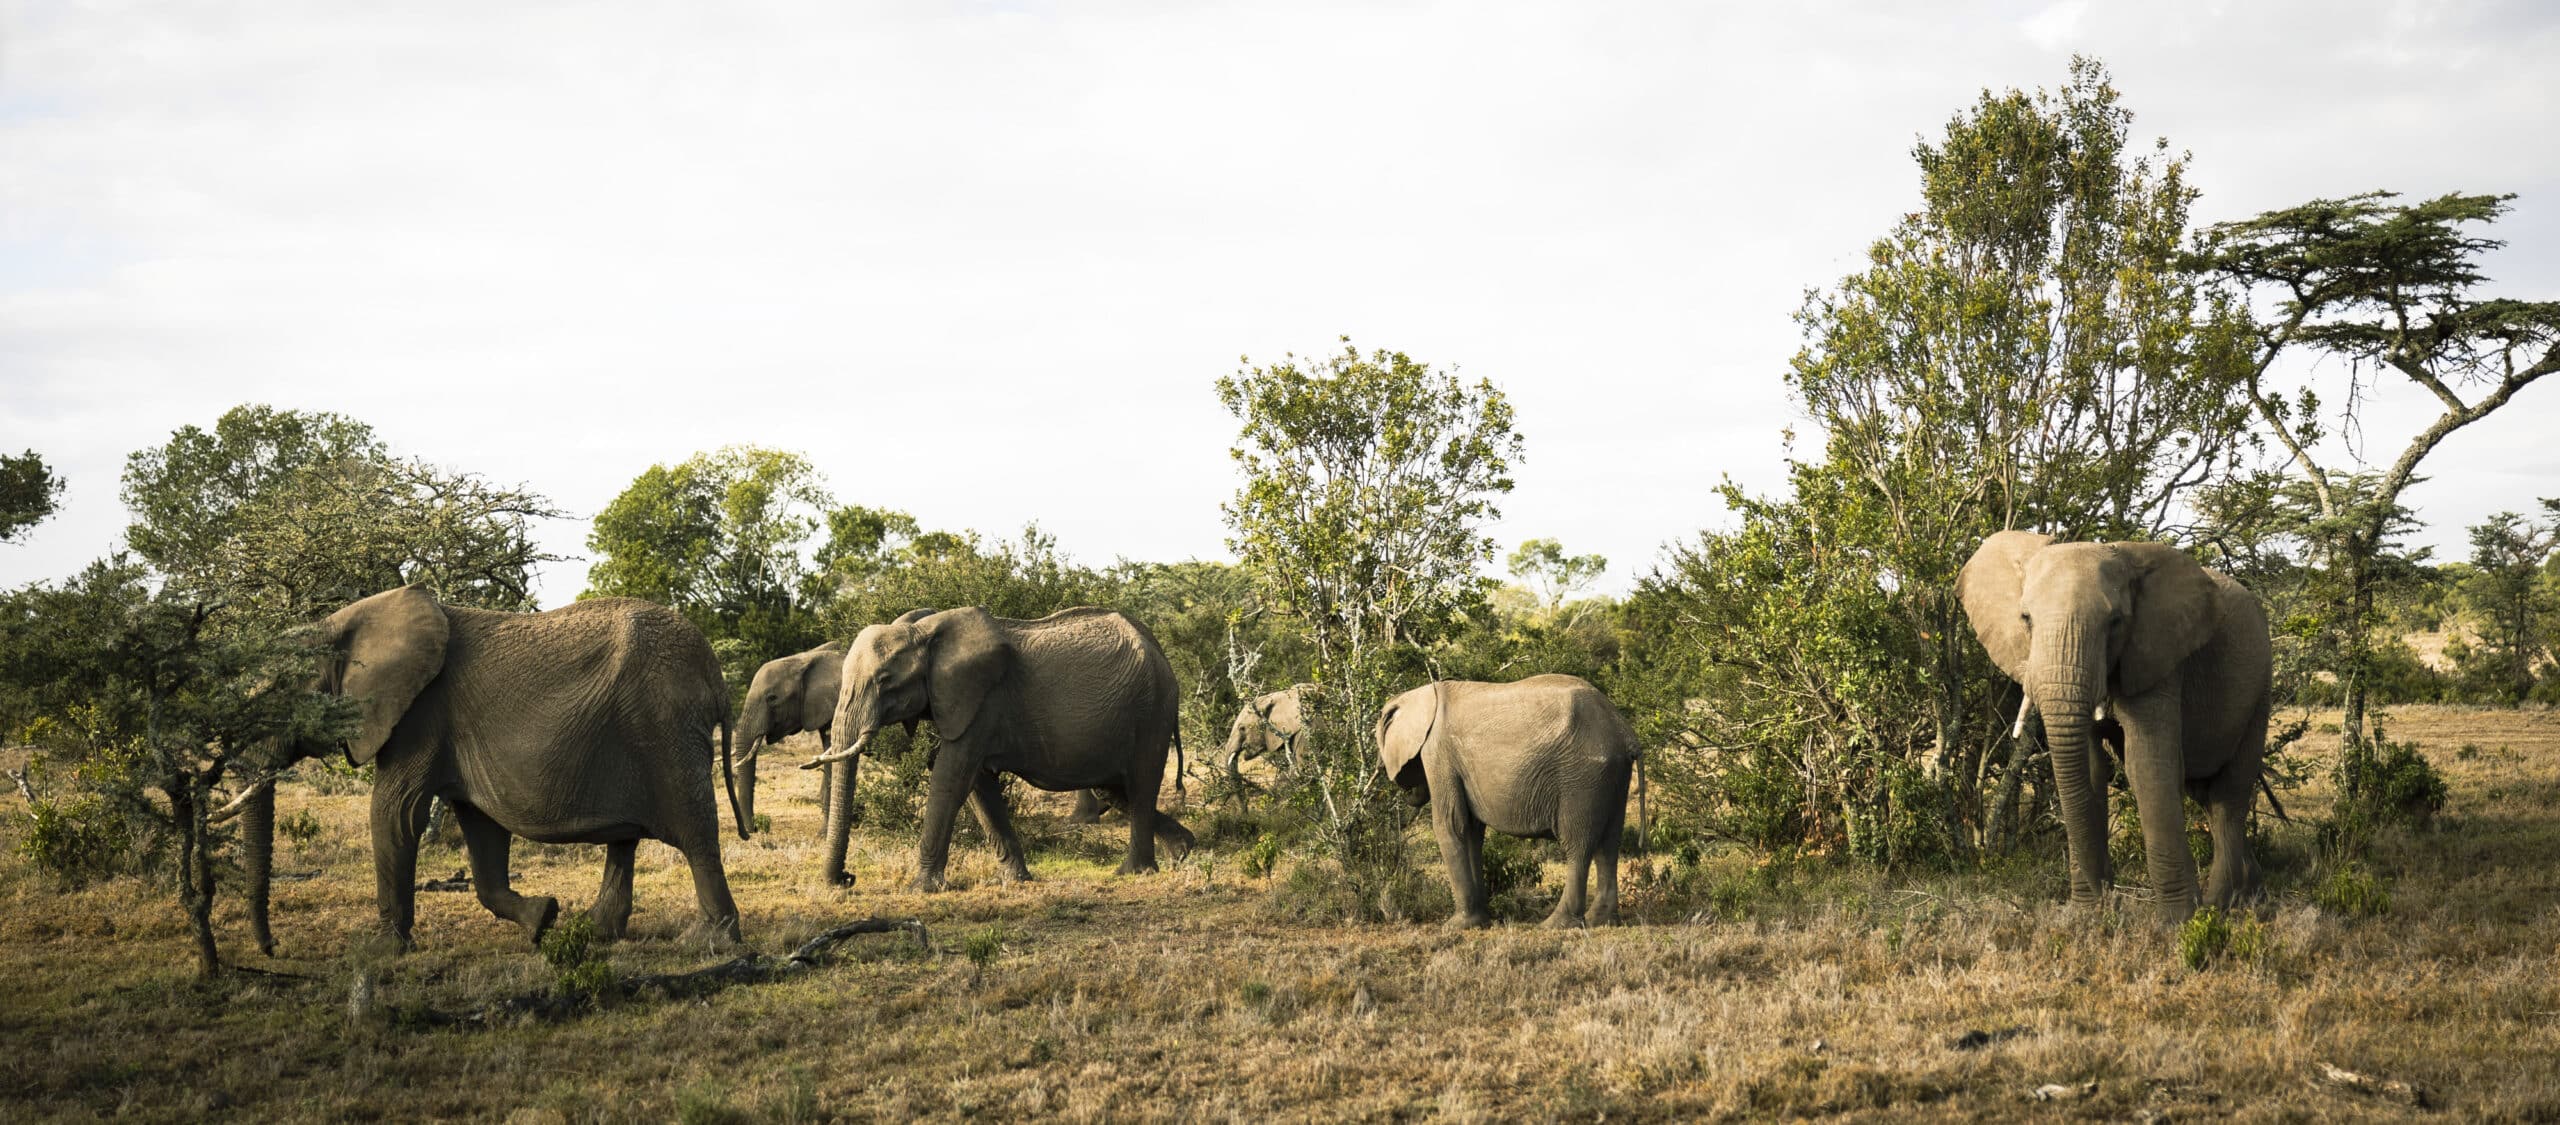 Eine Herde Elefanten, darunter ein Kalb, schreitet anmutig durch eine grasbewachsene afrikanische Savanne mit Bäumen und einem klaren Himmel im Hintergrund. © Fotografie Tomas Rodriguez